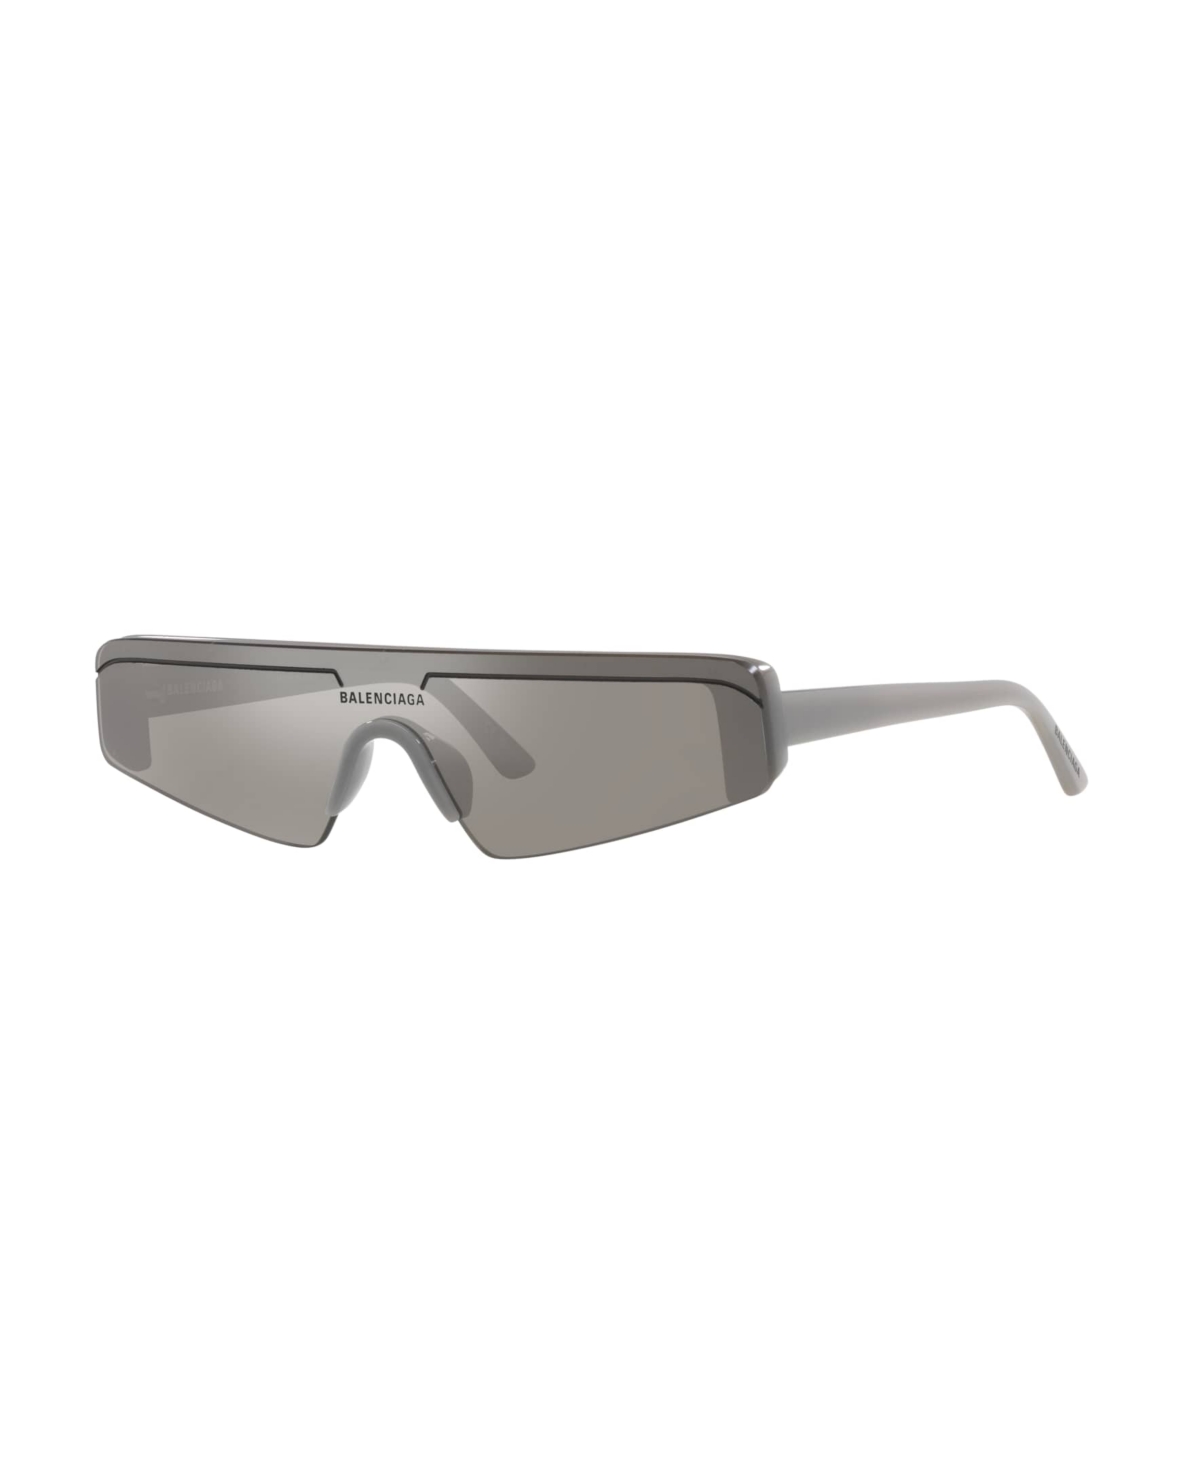 Balenciaga Unisex Sunglasses, Bb0003s In Gray